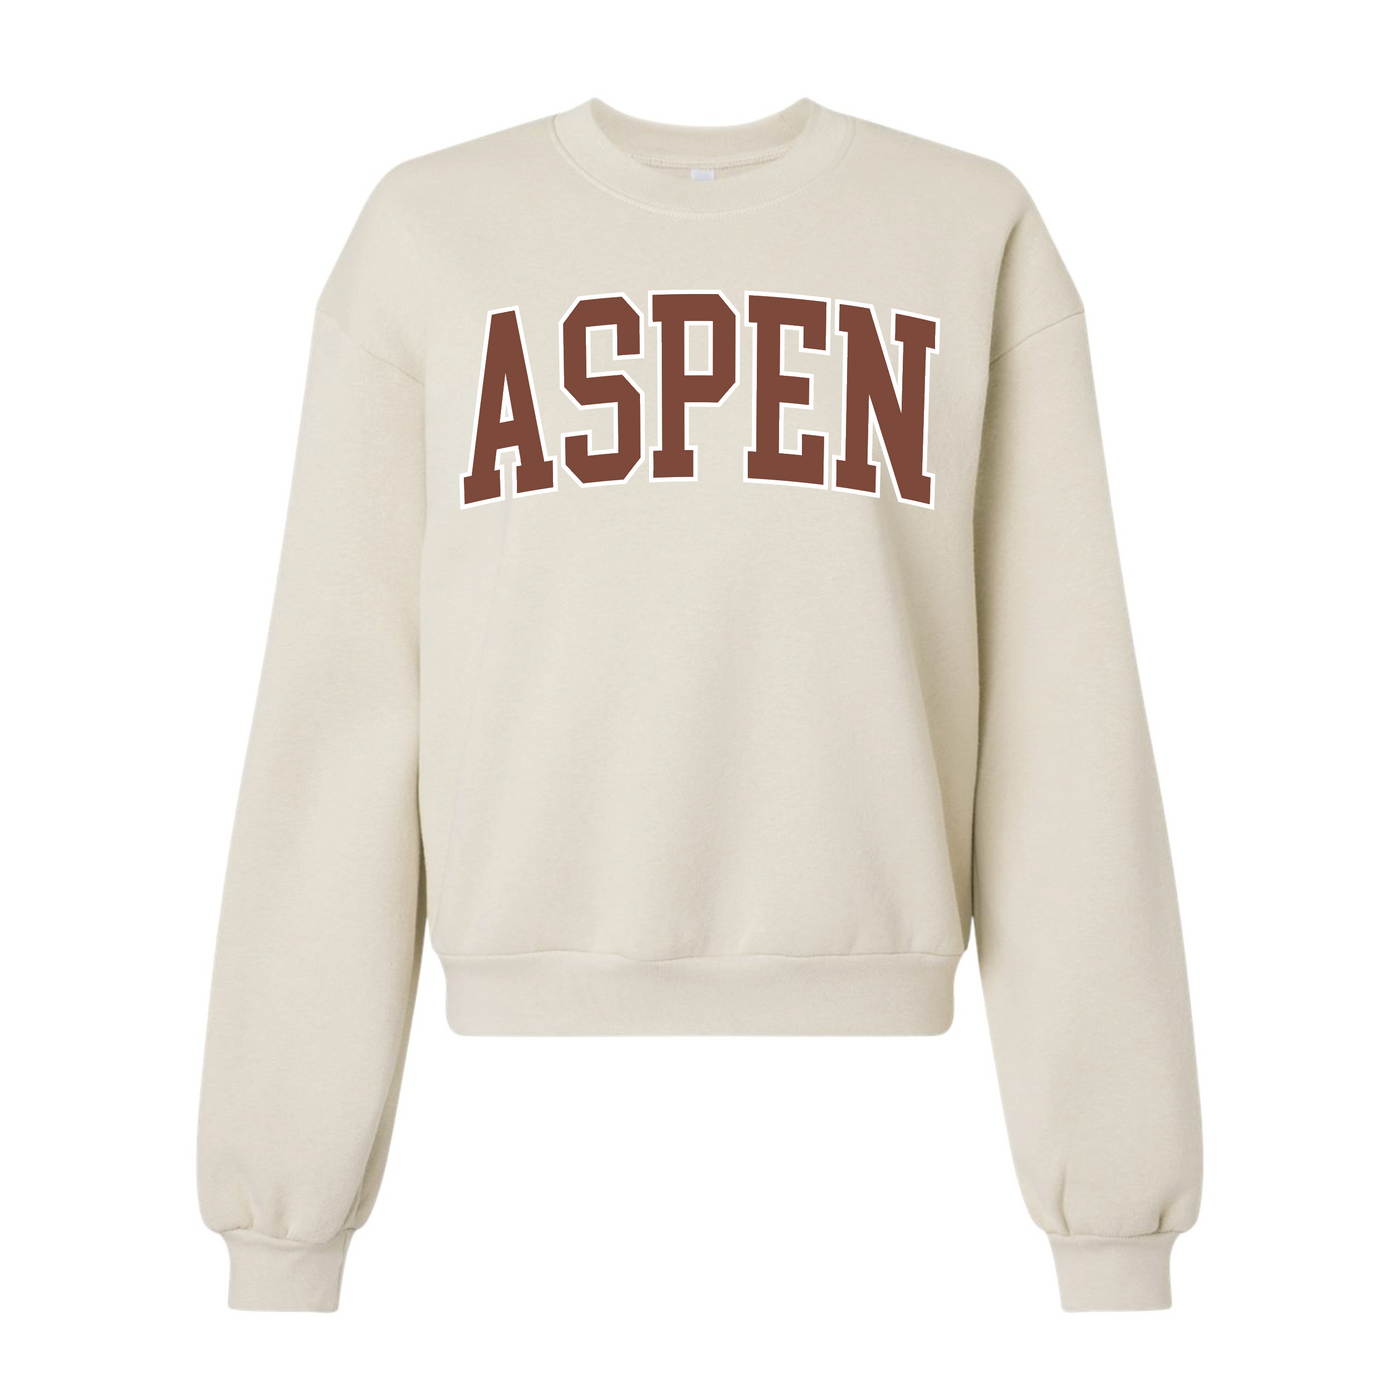 Aspen Crew Neck Sweatshirt